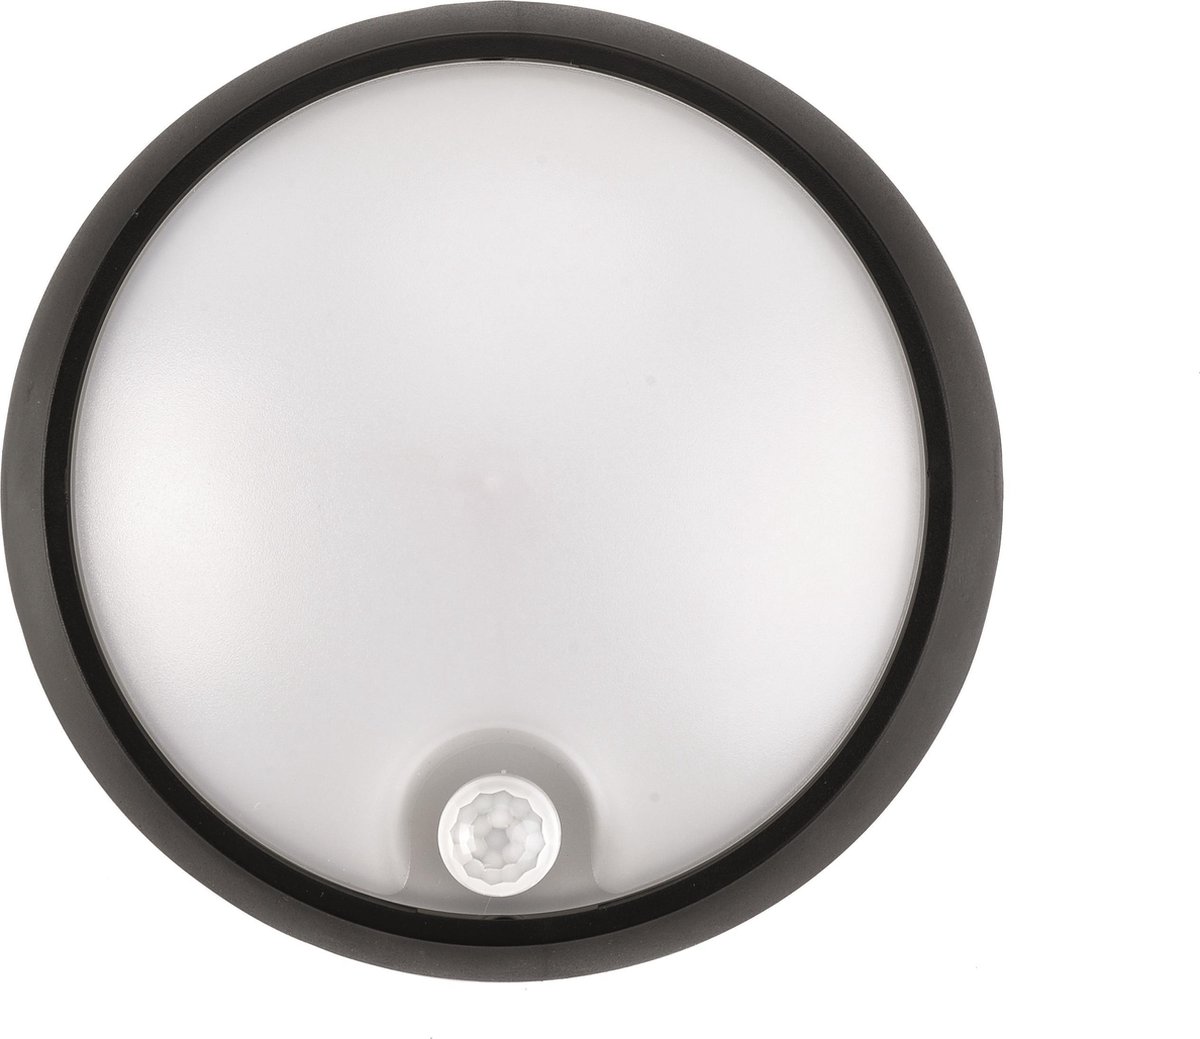 Prilux “Masne SENSOR” Wandlamp LED | 8W - 586lm - 3000K | voor binnen en buiten | met bewegingssensor | kleur zwart